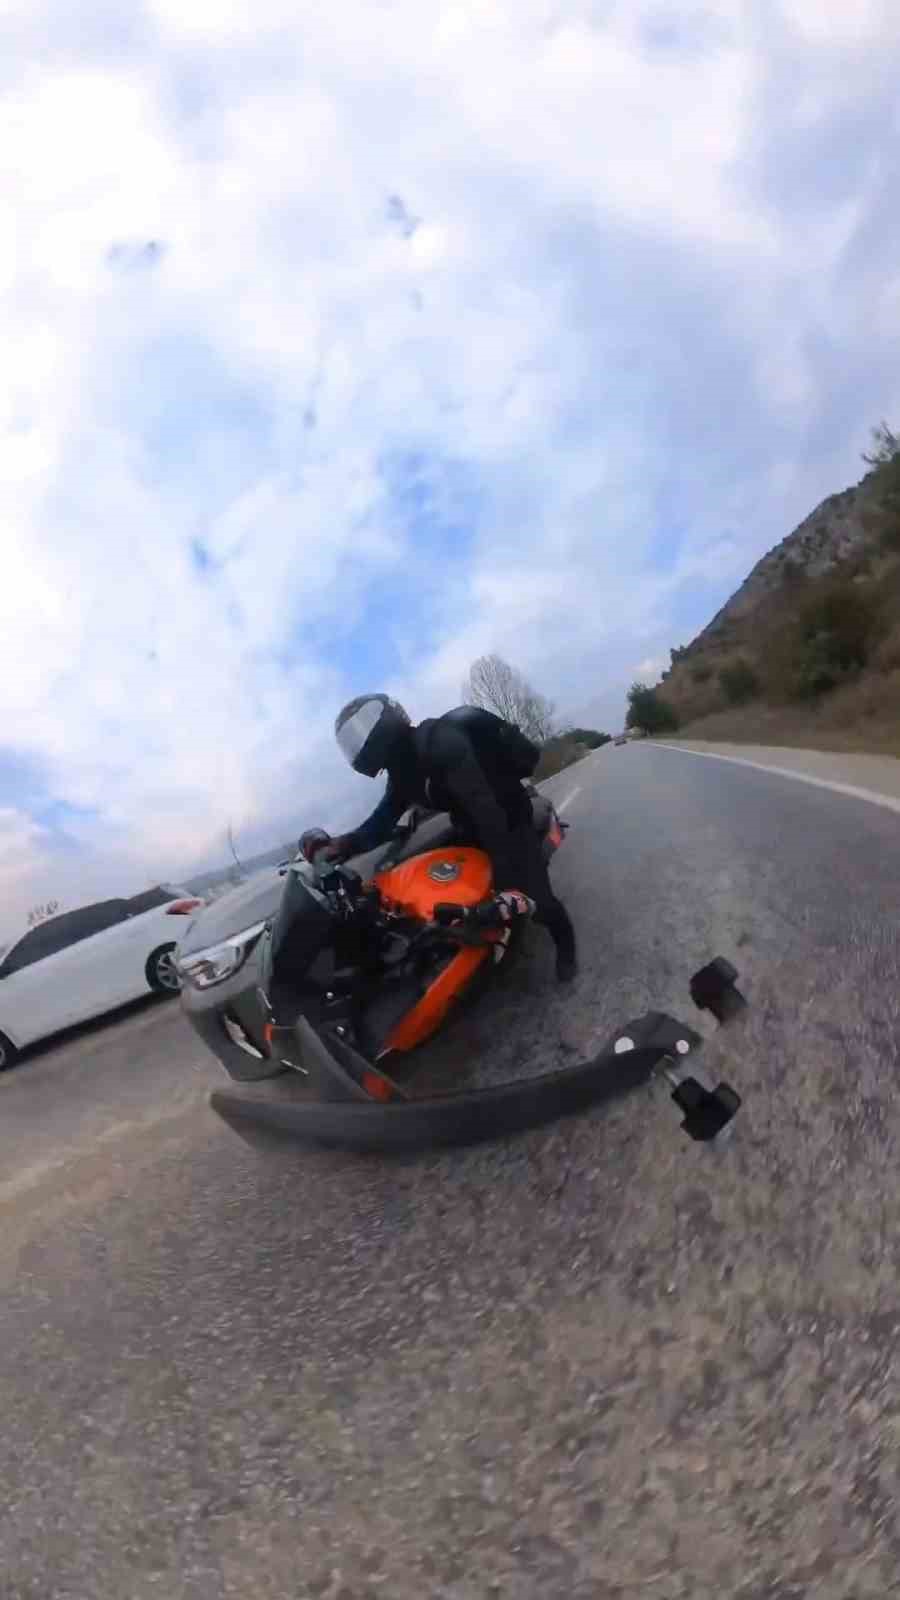 Motosiklet ile otomobilin kazası aksiyon kamerasında
